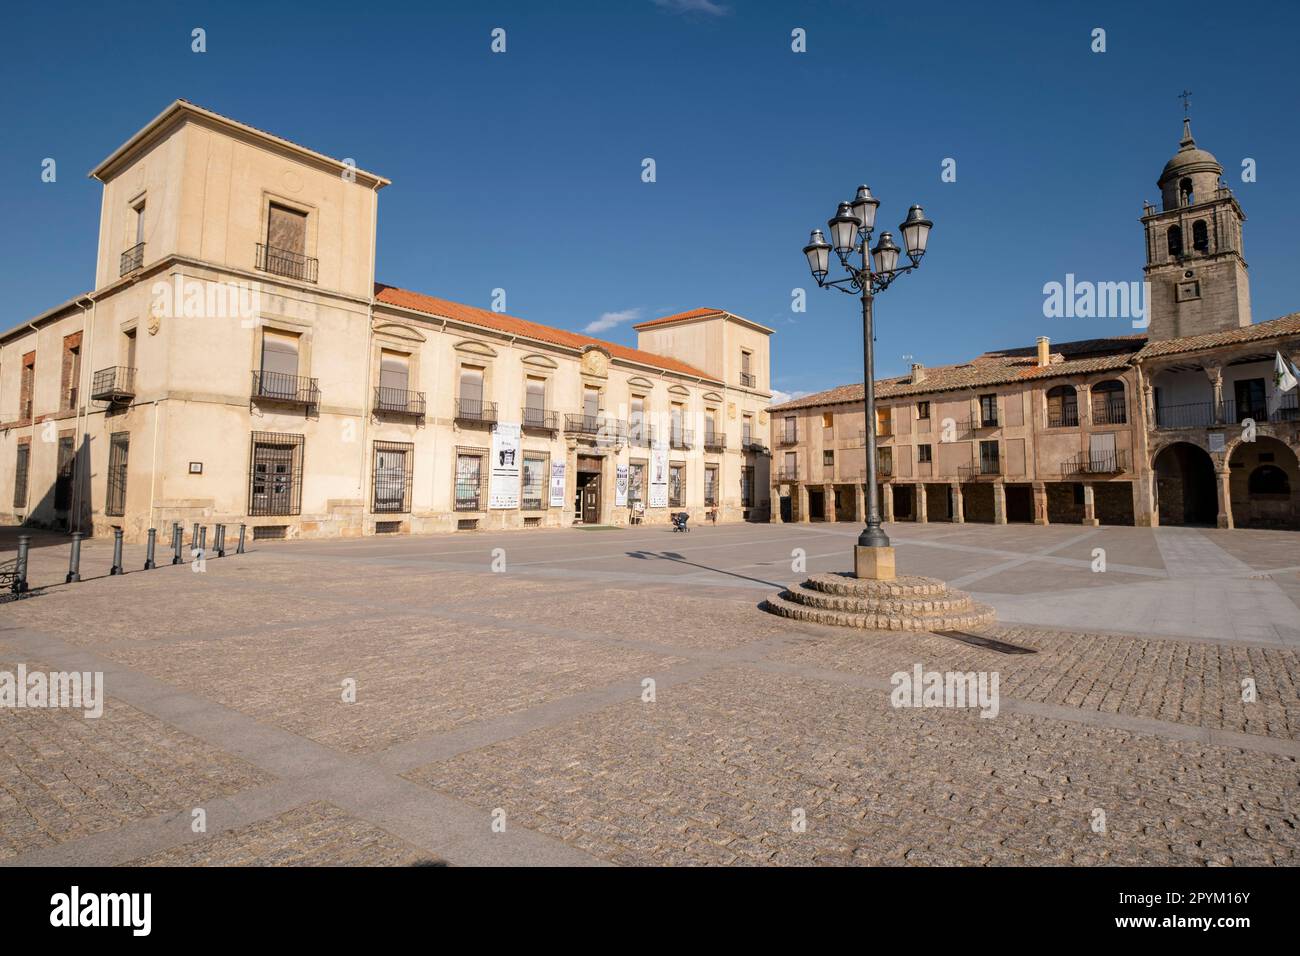 Palacio del Duque de Medinaceli, XVI-XVII, plaza mayor, Medinaceli, Soria,  comunidad autónoma de Castilla y León, Spain, Europe Stock Photo